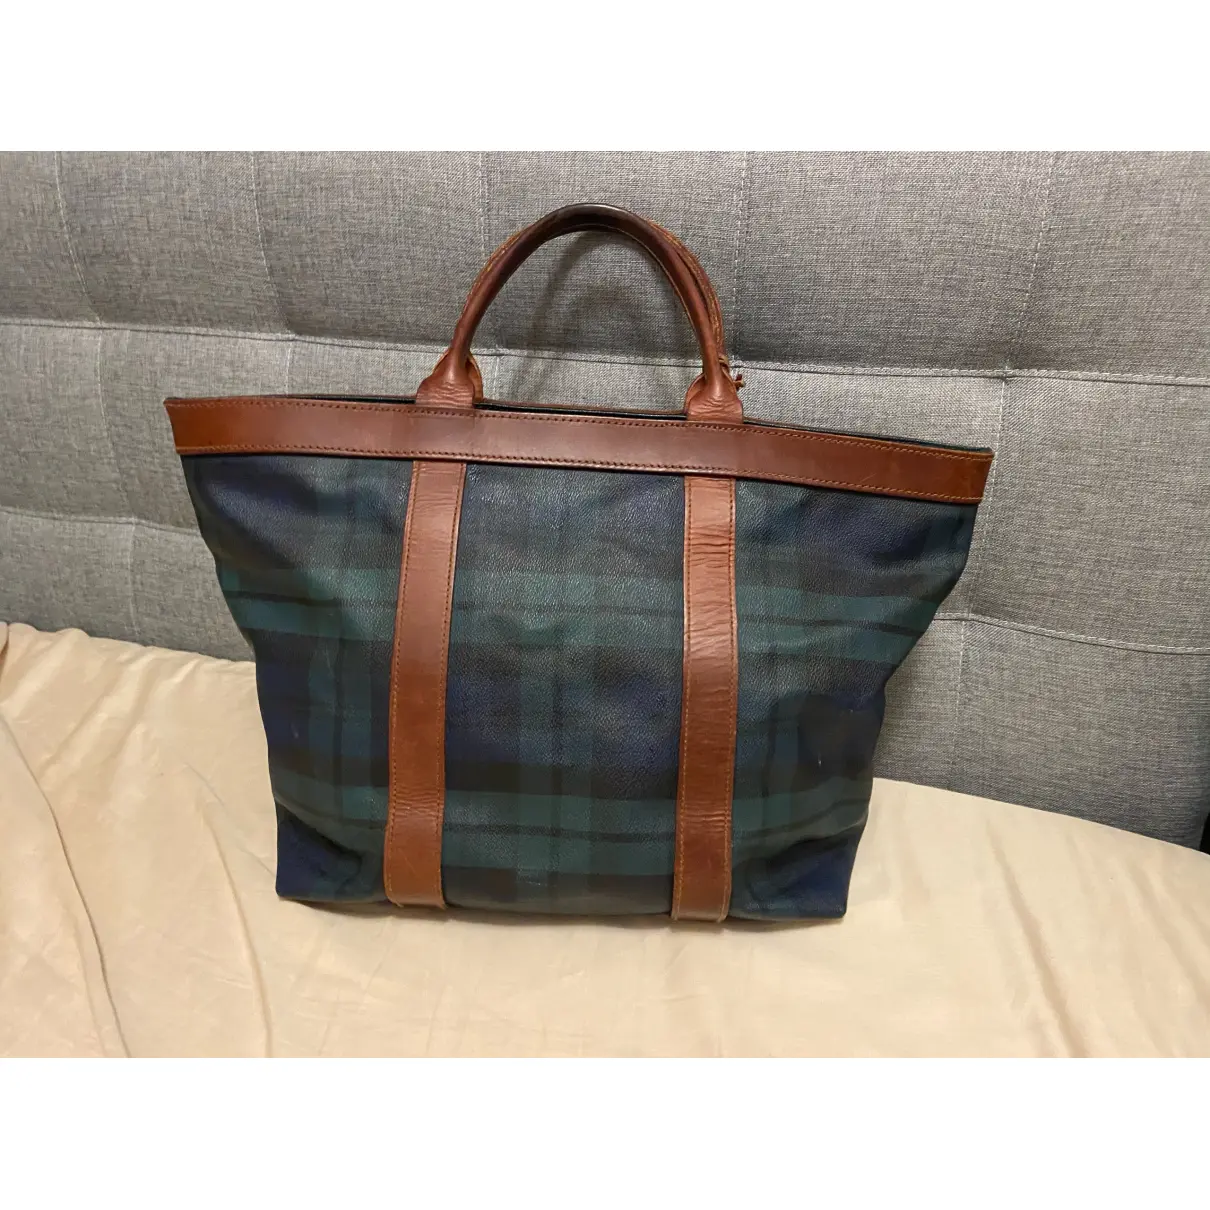 Buy Polo Ralph Lauren Travel bag online